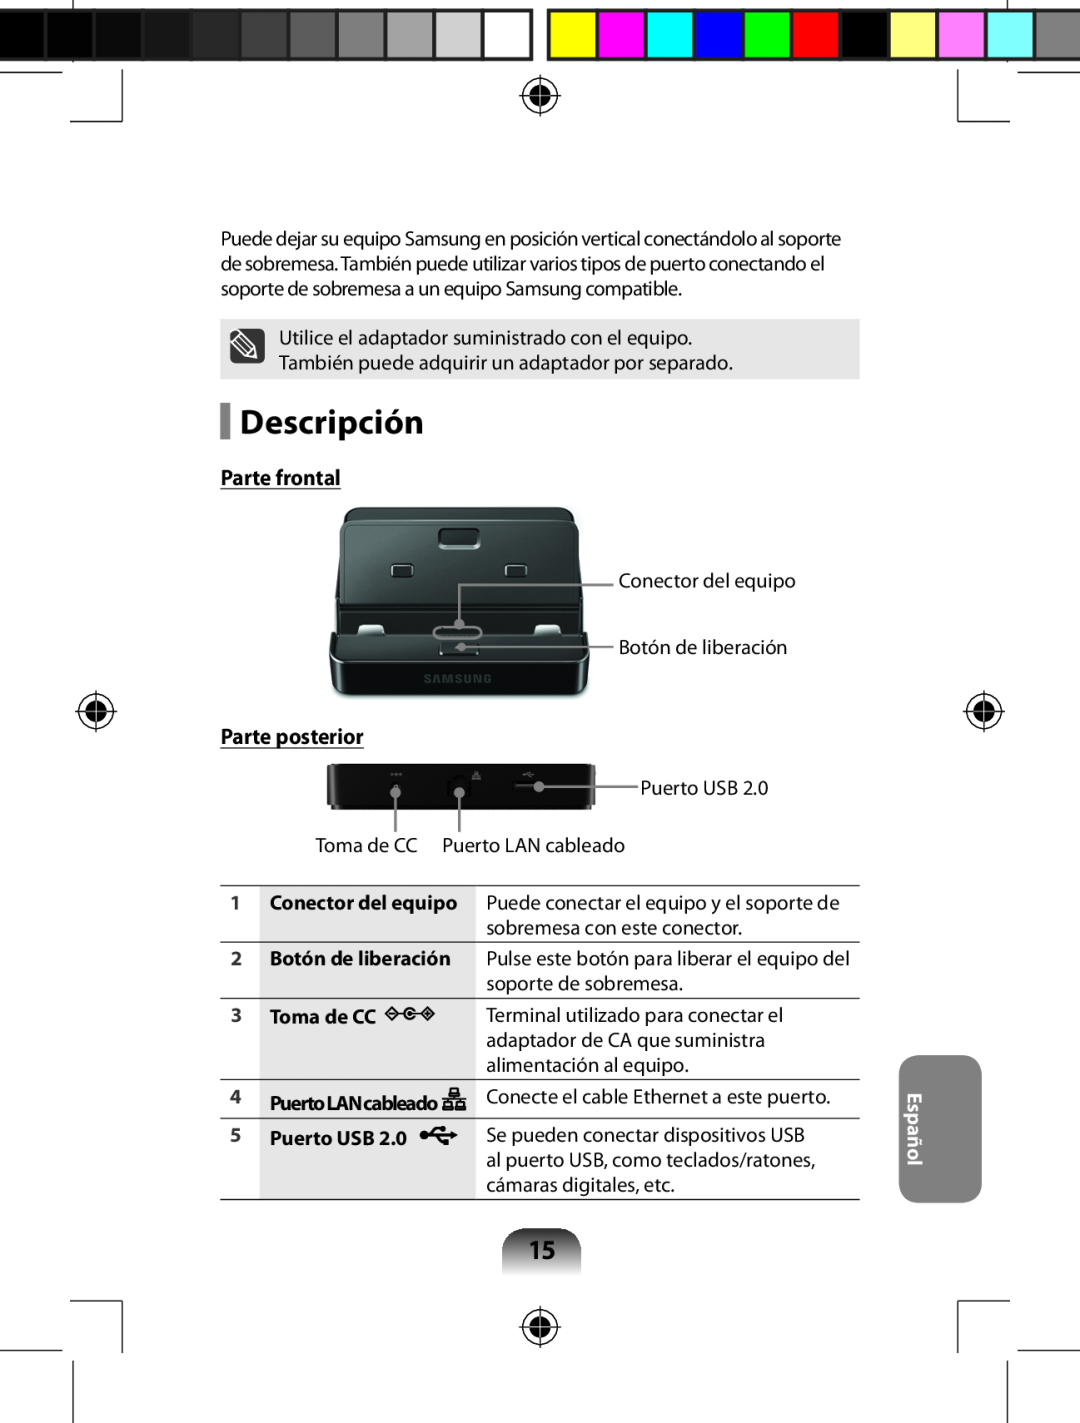 Samsung AA-RD7NMKD/US, AARD7NSDOUS manual Descripción, Parte frontal, Parte posterior, Español 